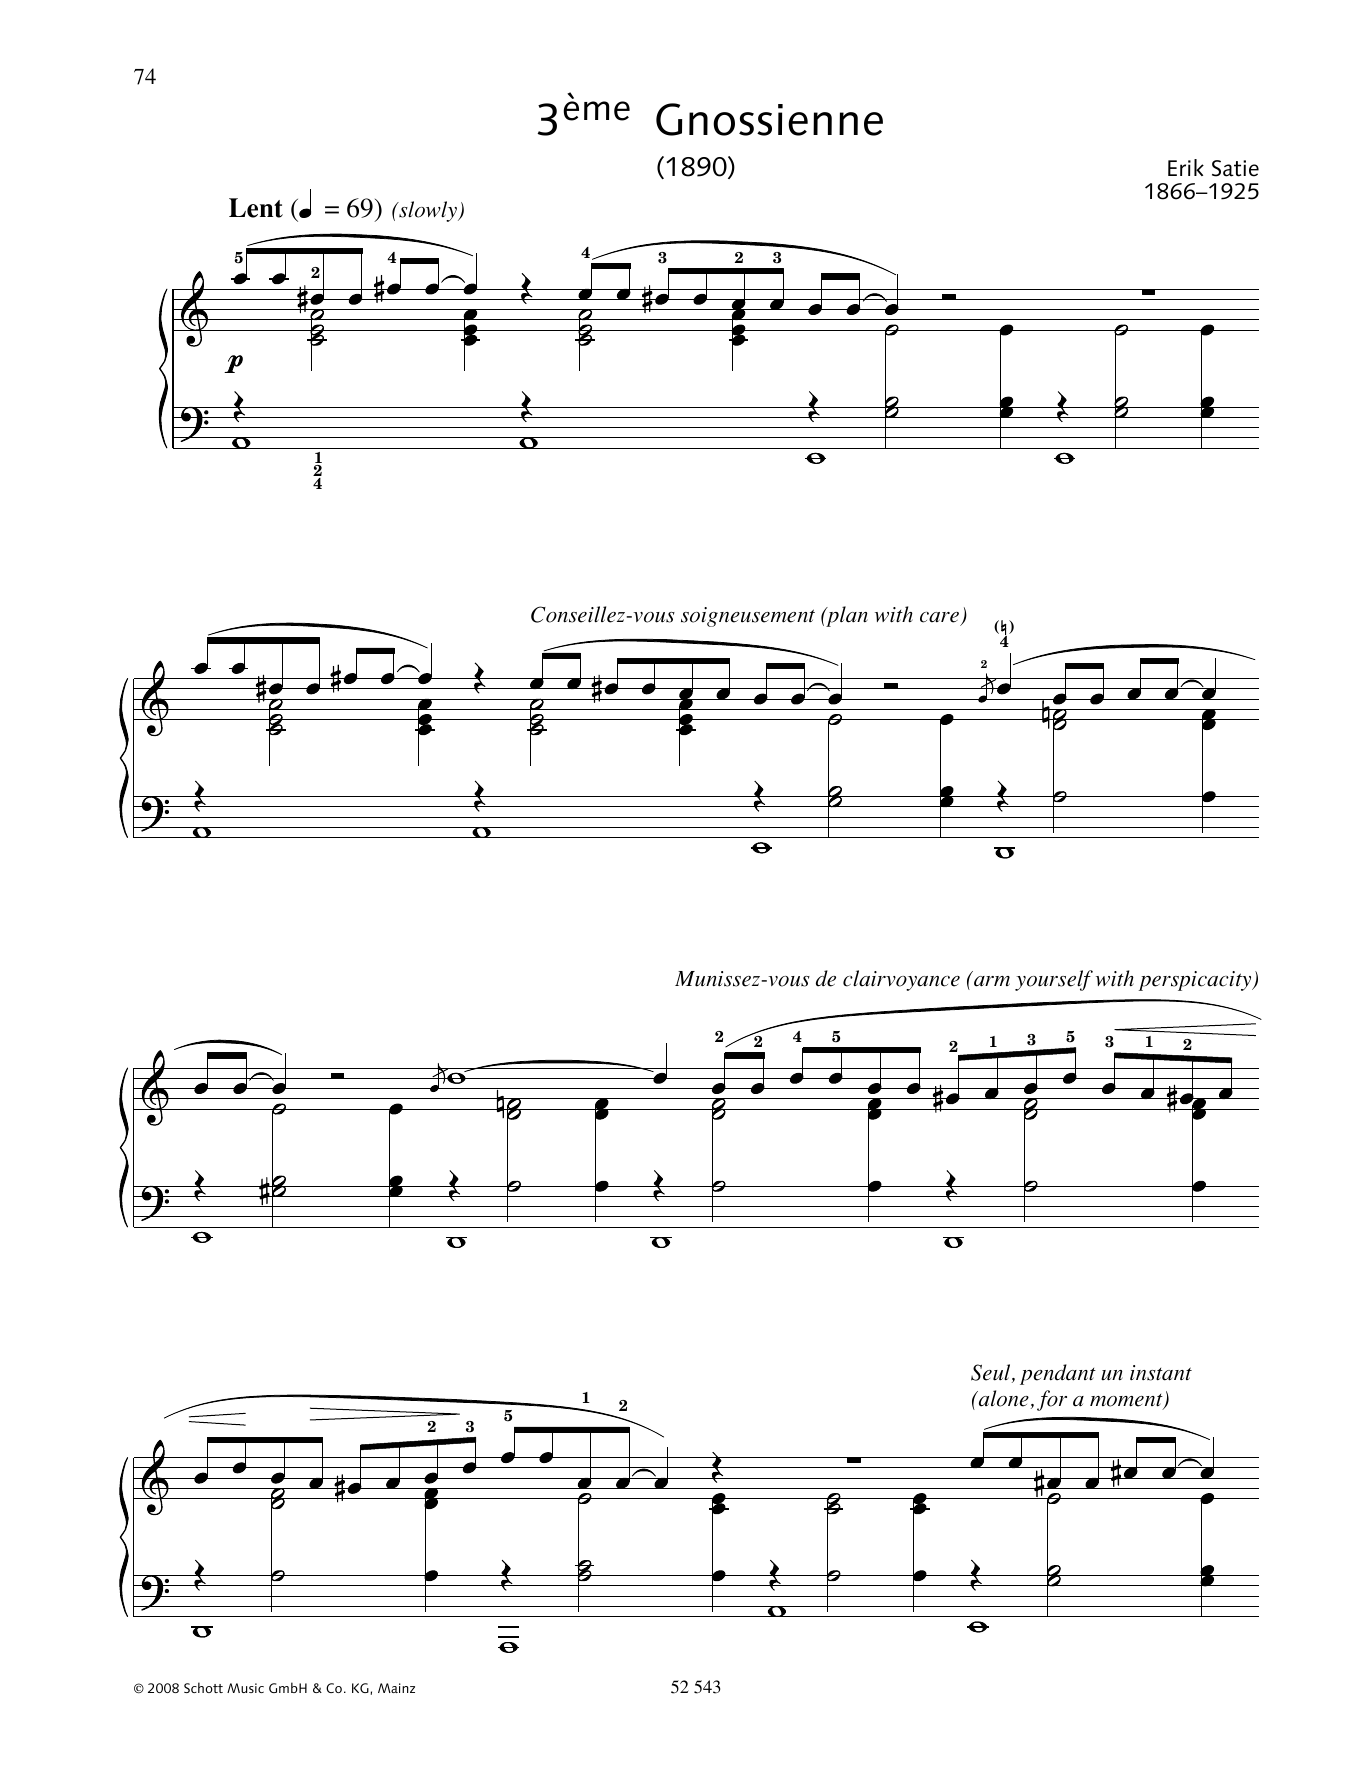 Download Erik Satie 3ème Gnossienne Sheet Music